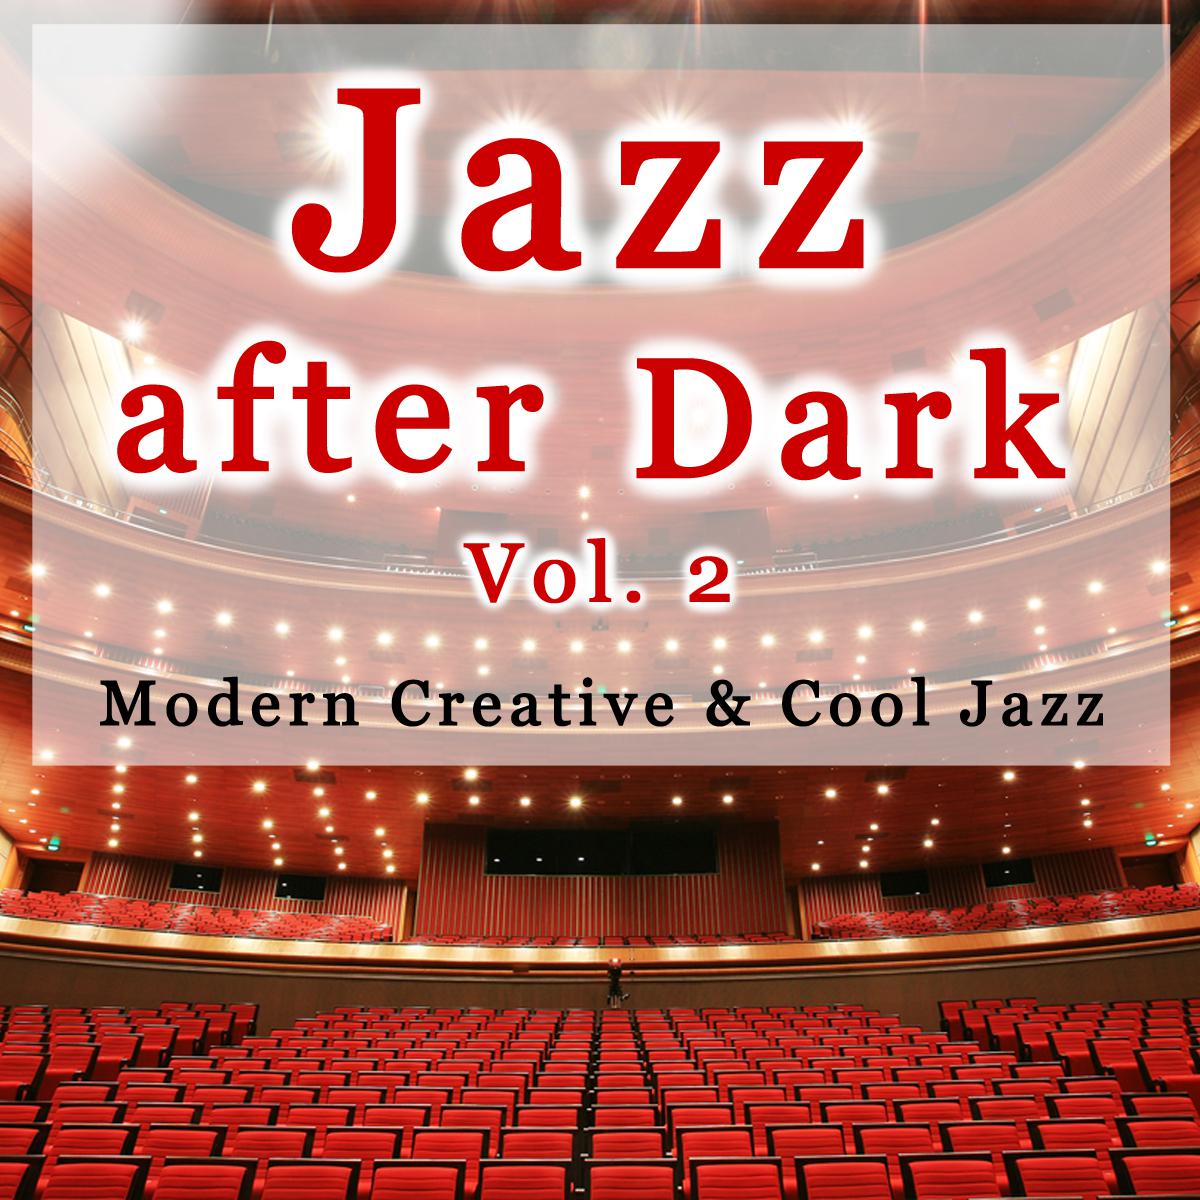 Jazz After Dark Vol. 2